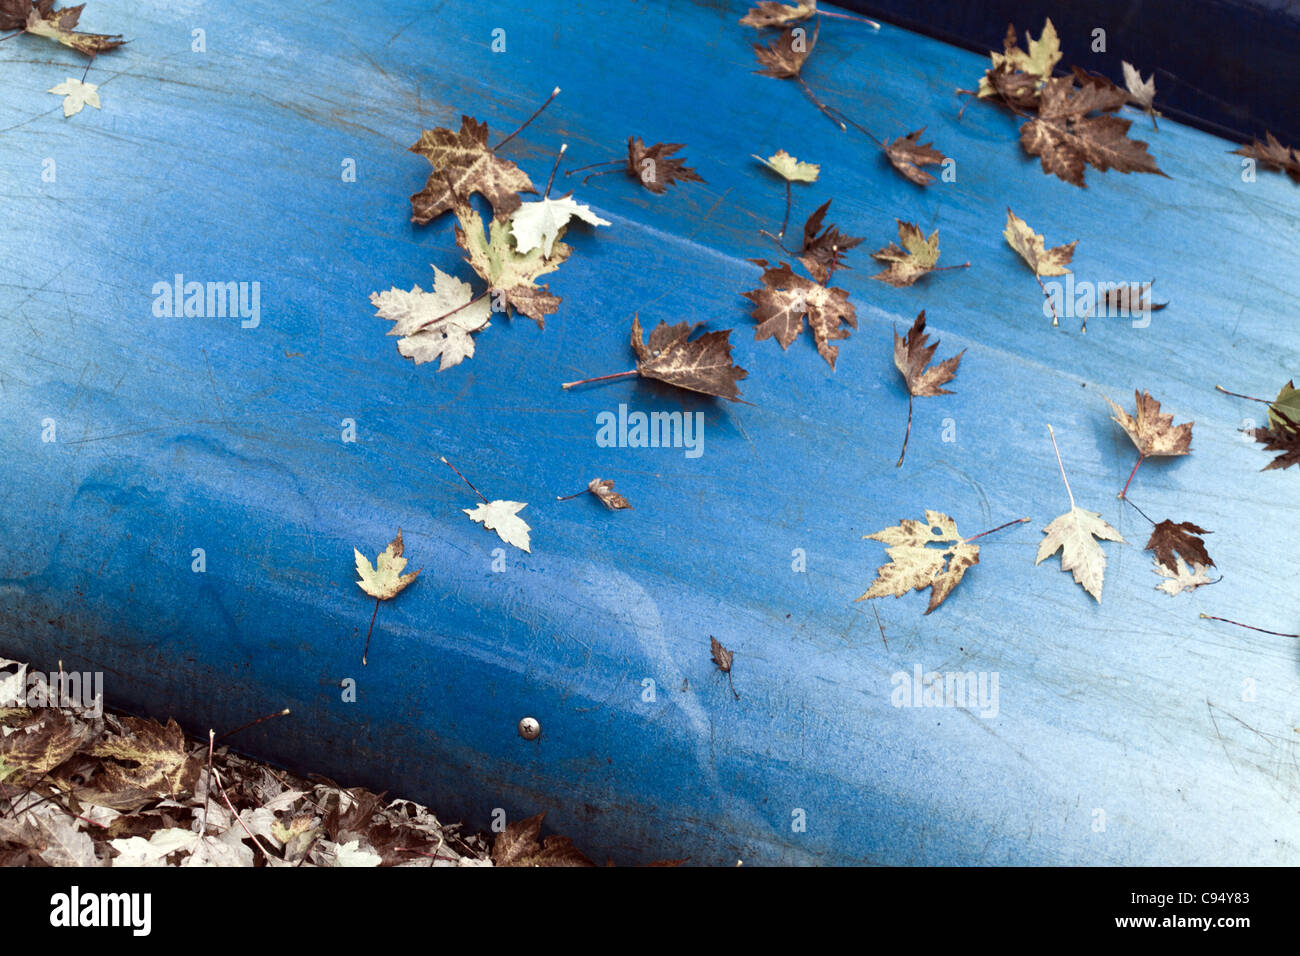 Bunte blau Kanu mit Blättern gestapelt auf einem Gestell Verwendung warten. Stockfoto